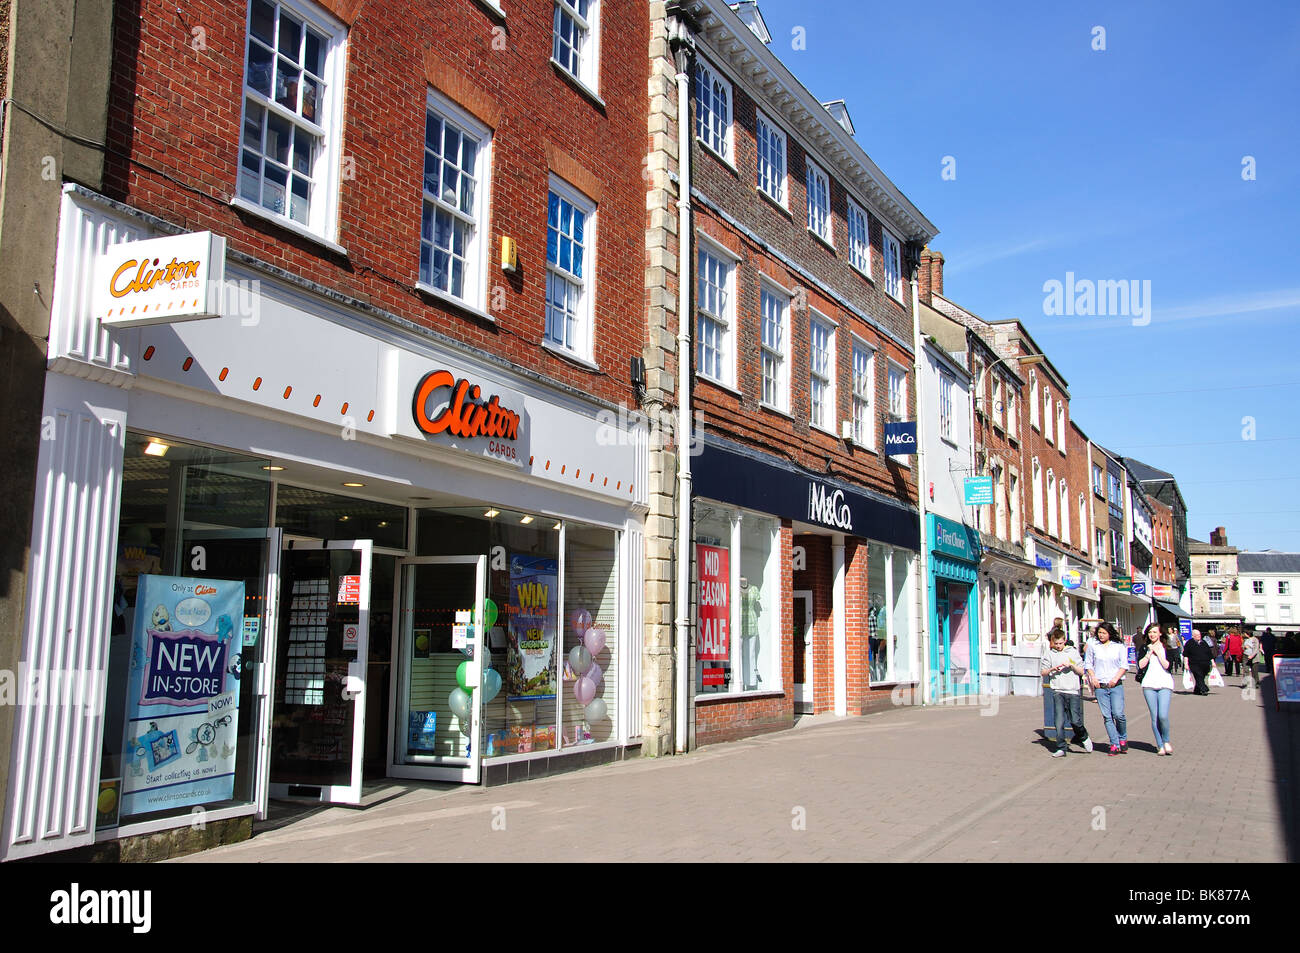 High street negozi, il Brittox, Devizes, Wiltshire, Inghilterra, Regno Unito Foto Stock